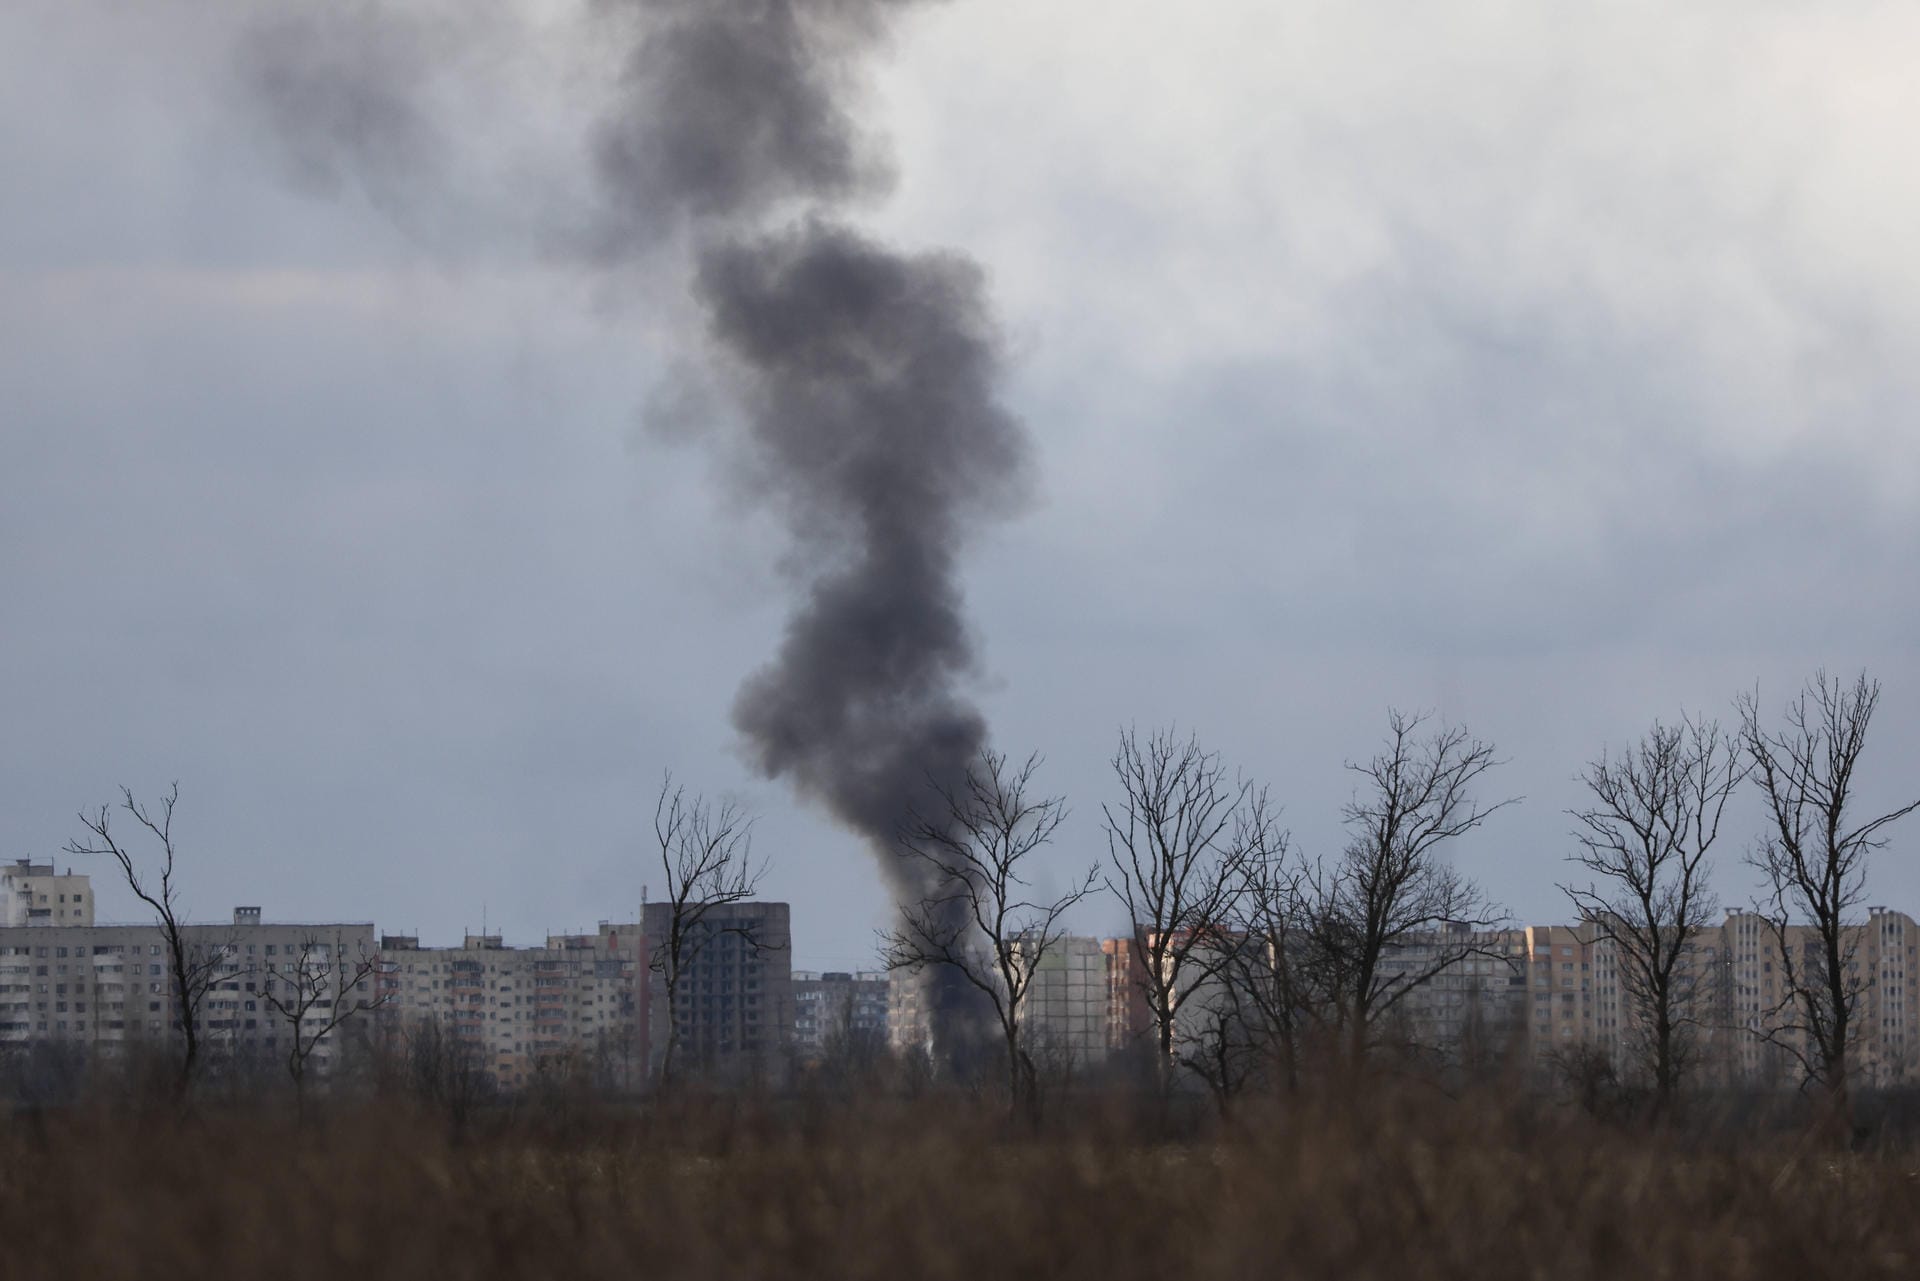 Eine Woche nach Russlands Einmarsch in die Ukraine steigt am 2. März erstmals Rauch über Mariupol auf. Die Stadt, deren 441.000 Einwohner überwiegend russischsprachig sind, steht unter Beschuss. Bürgermeister Wadym Boitschenko warnt vor einer Belagerung der Stadt durch russische Truppen "wie in Leningrad".